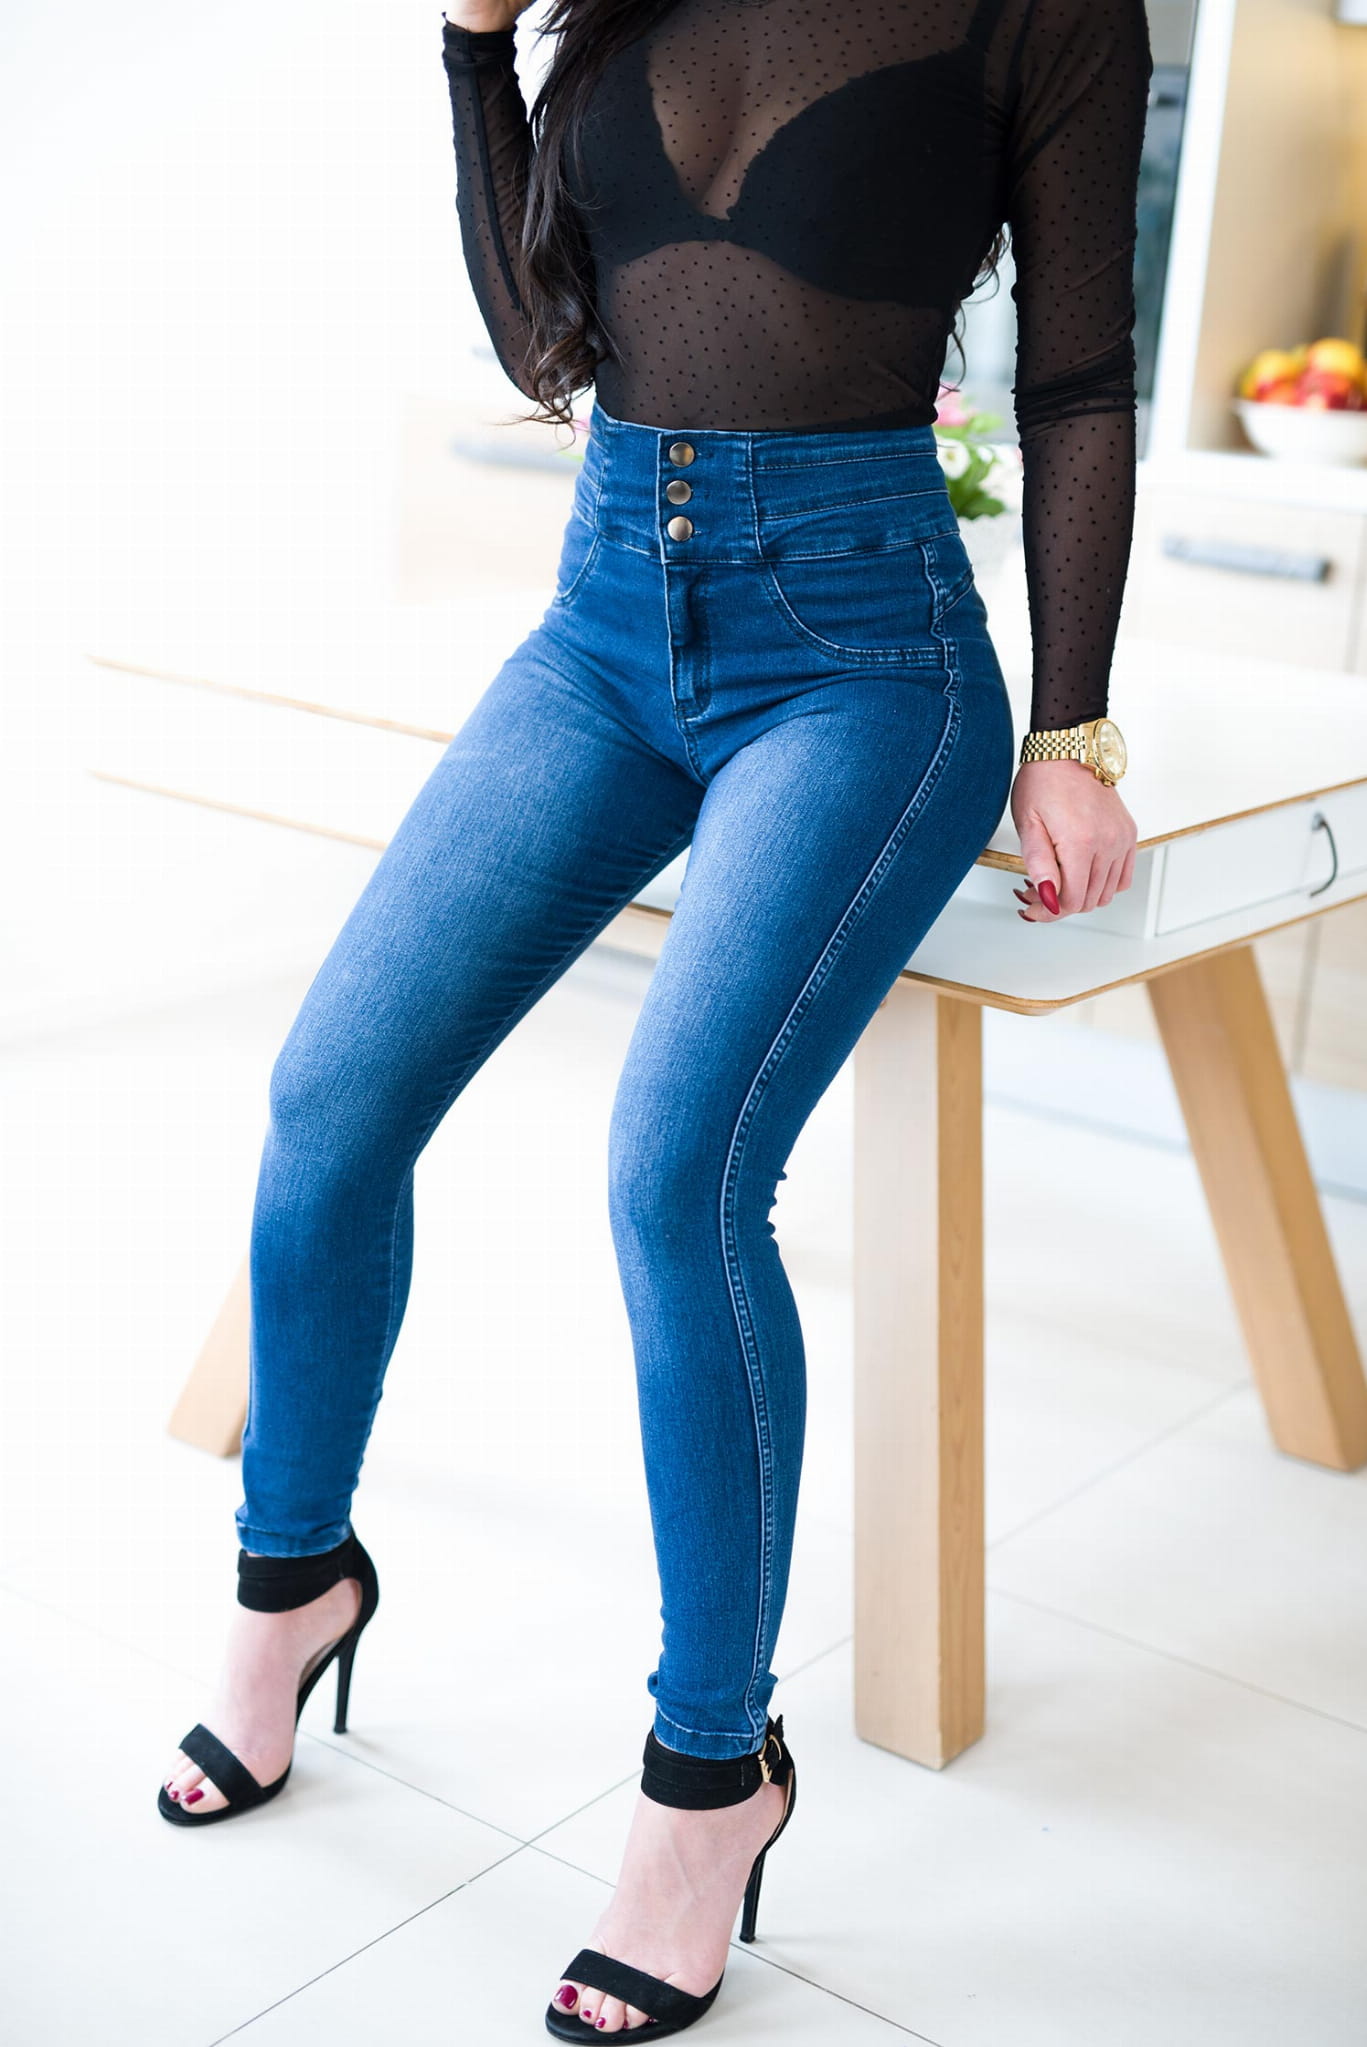 джинсы женские с высокой талией фото